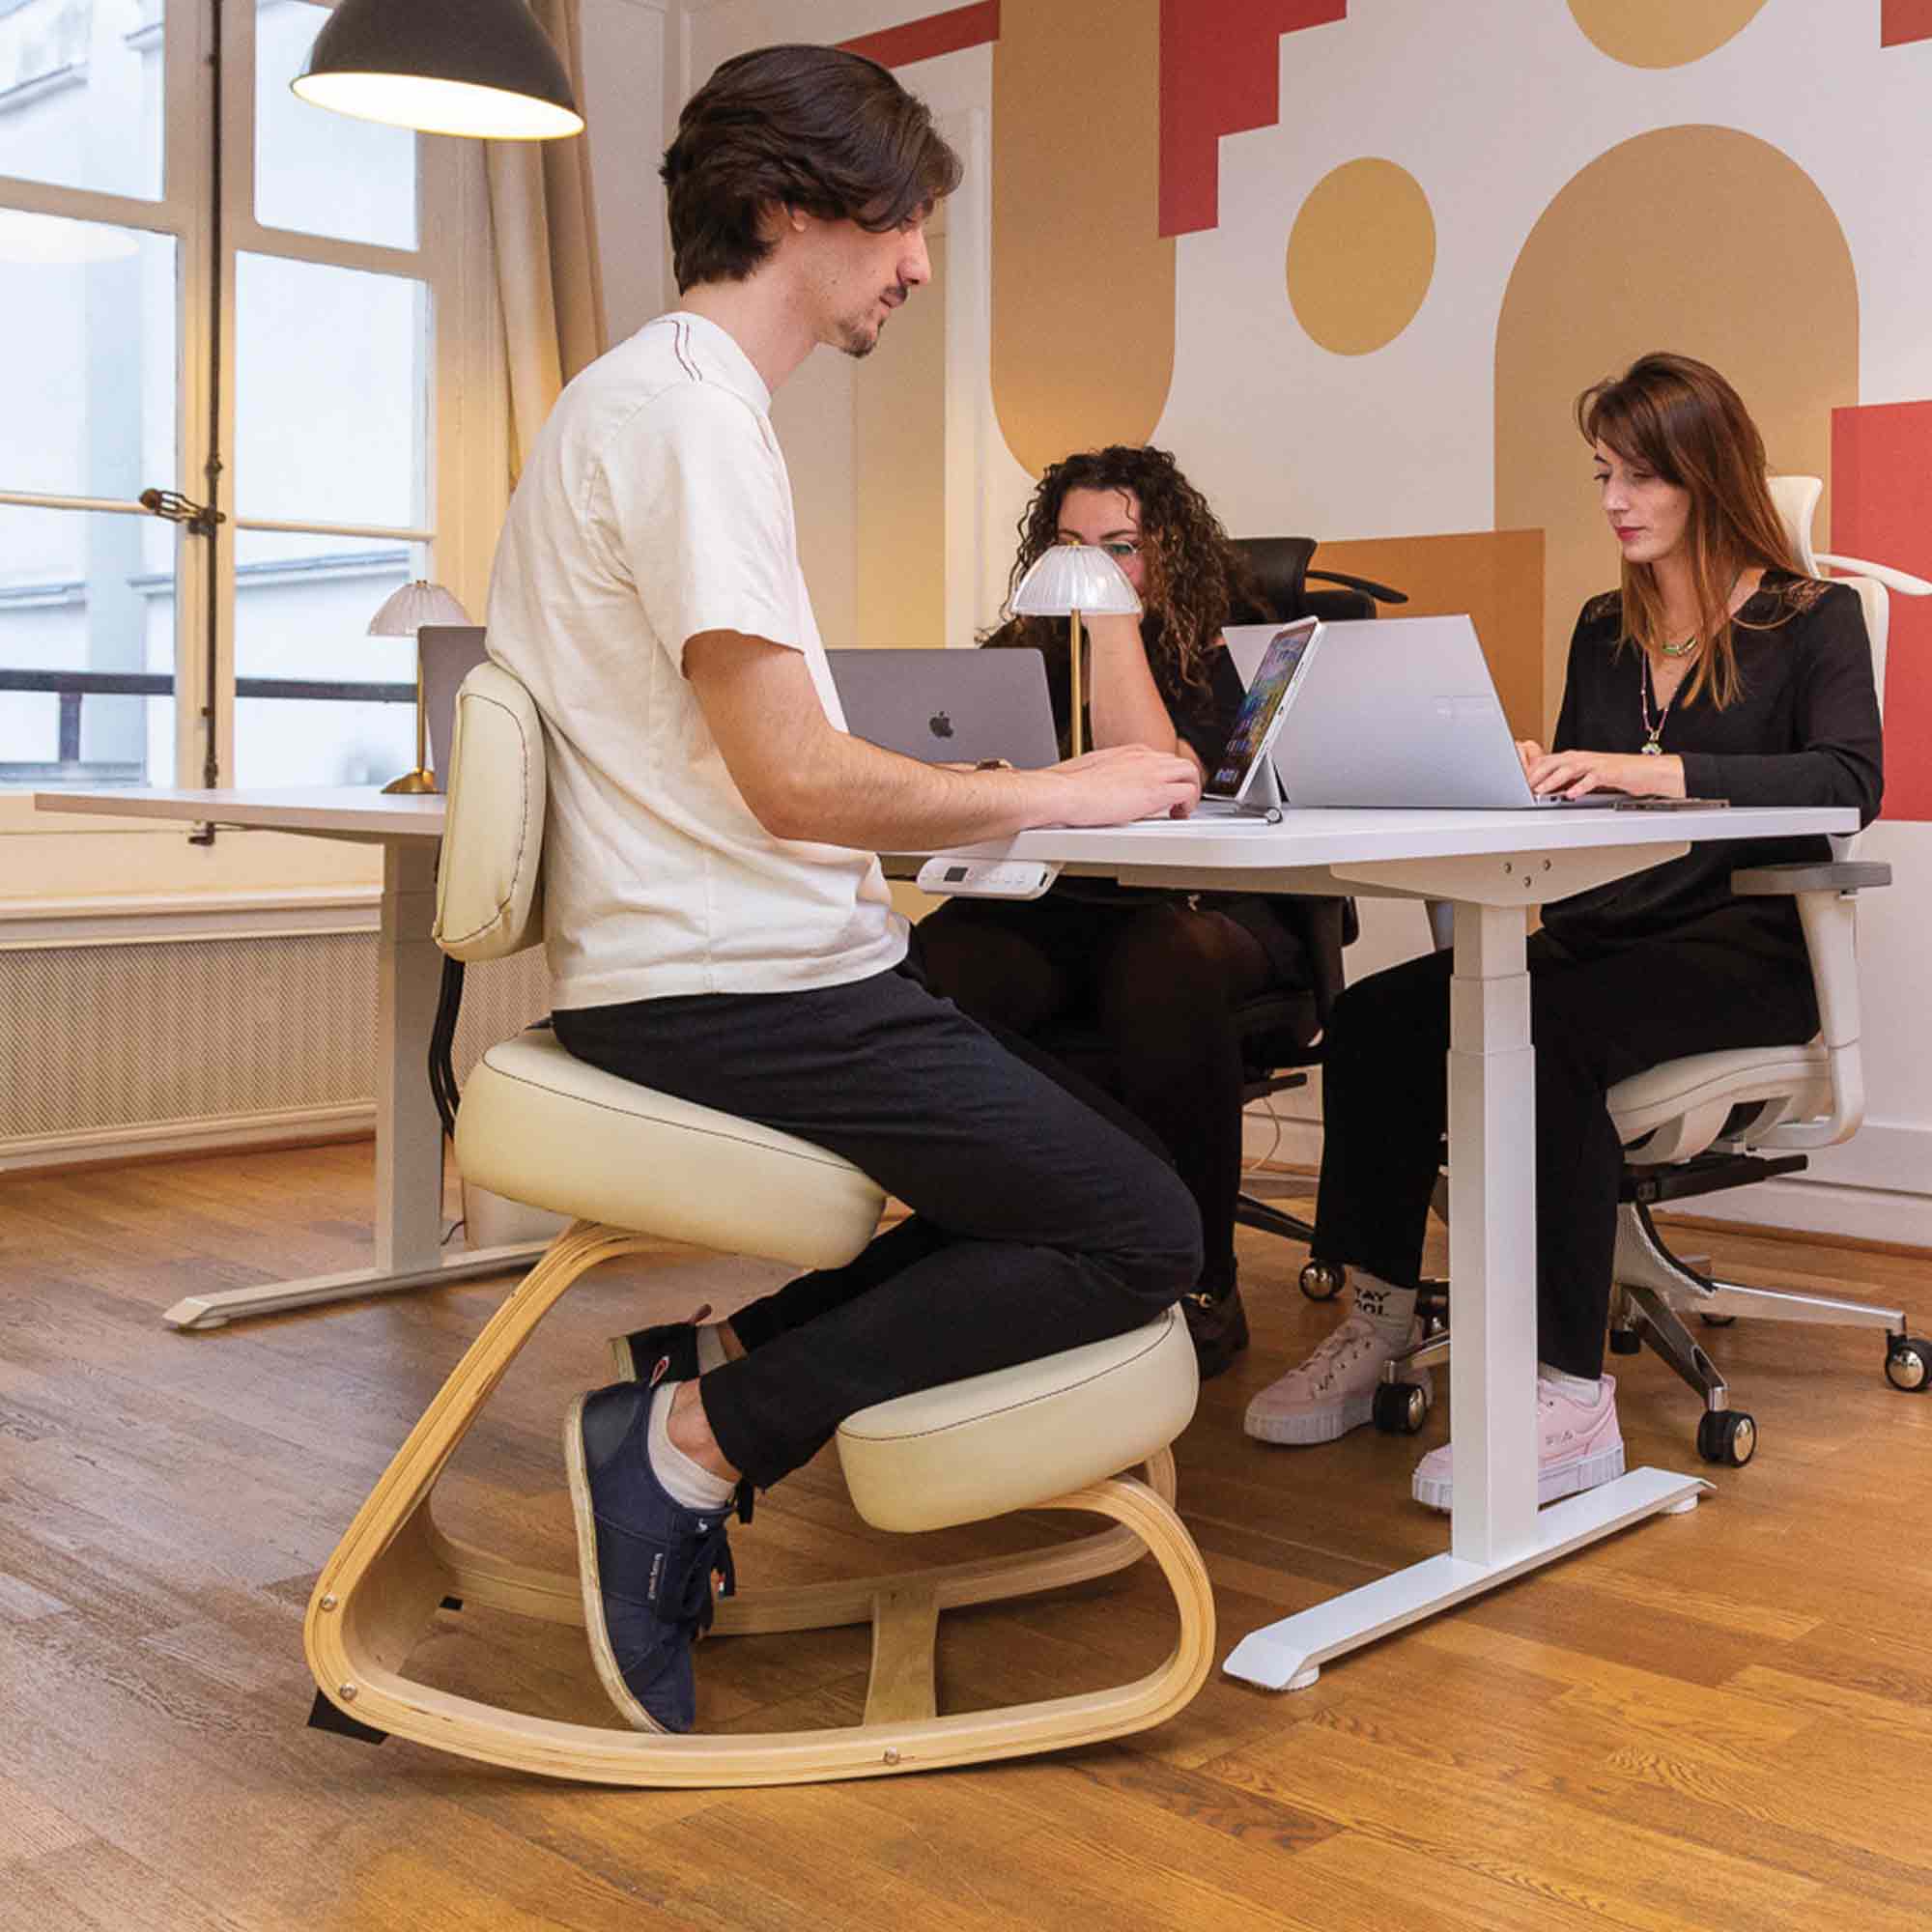  chaise ergonomique de bureau en maille rouge TERRANA Kqueo_ambiance